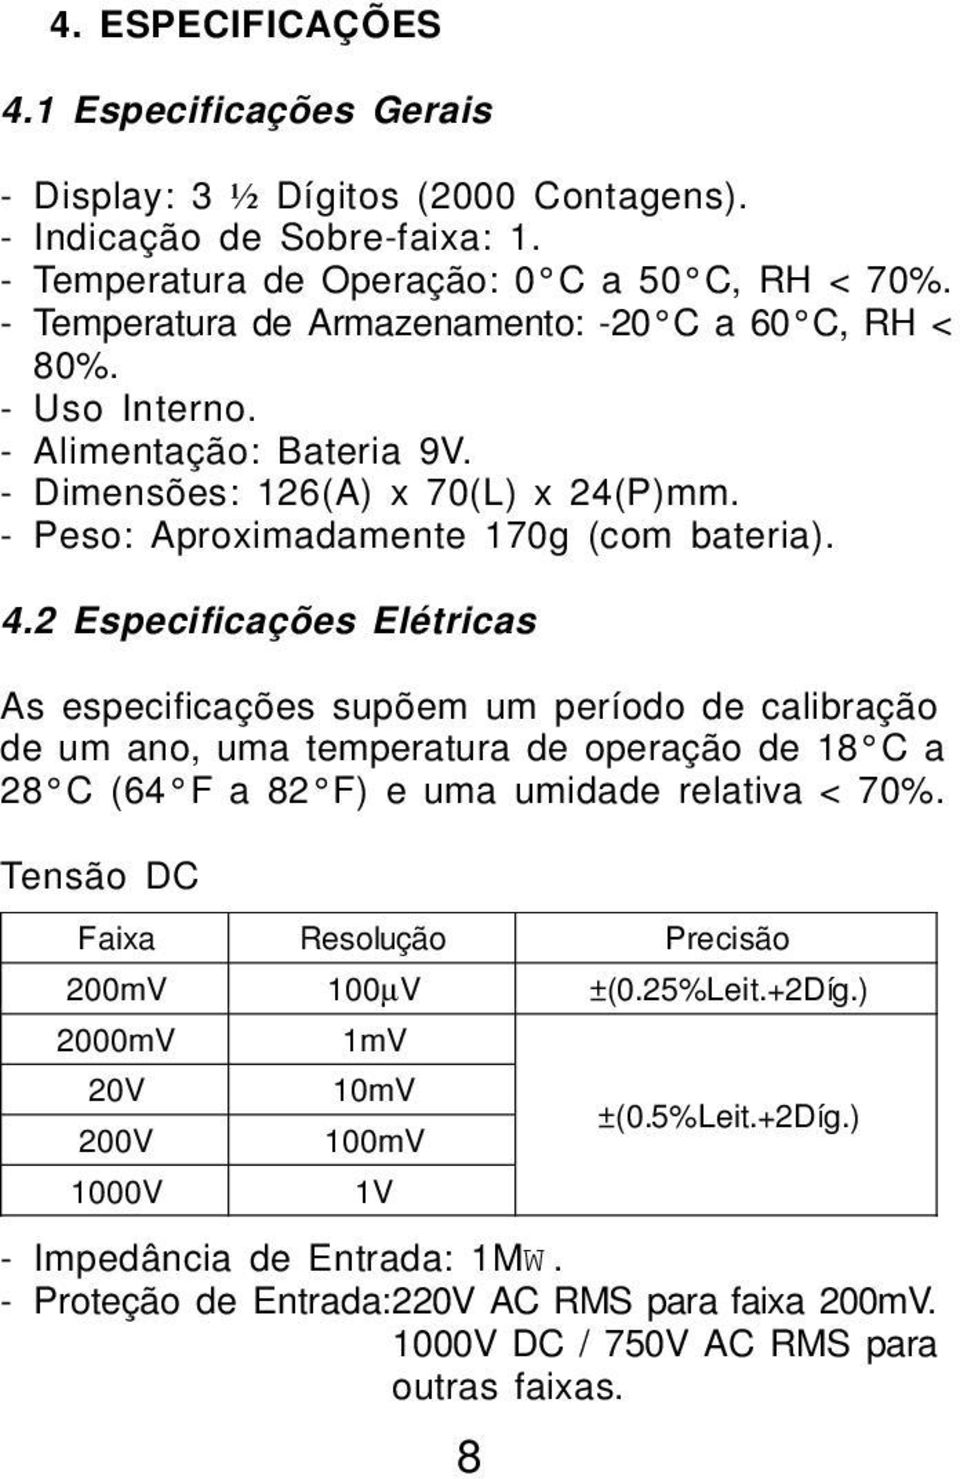 2 Especificações Elétricas As especificações supõem um período de calibração de um ano, uma temperatura de operação de 18 C a 28 C (64 F a 82 F) e uma umidade relativa < 70%.